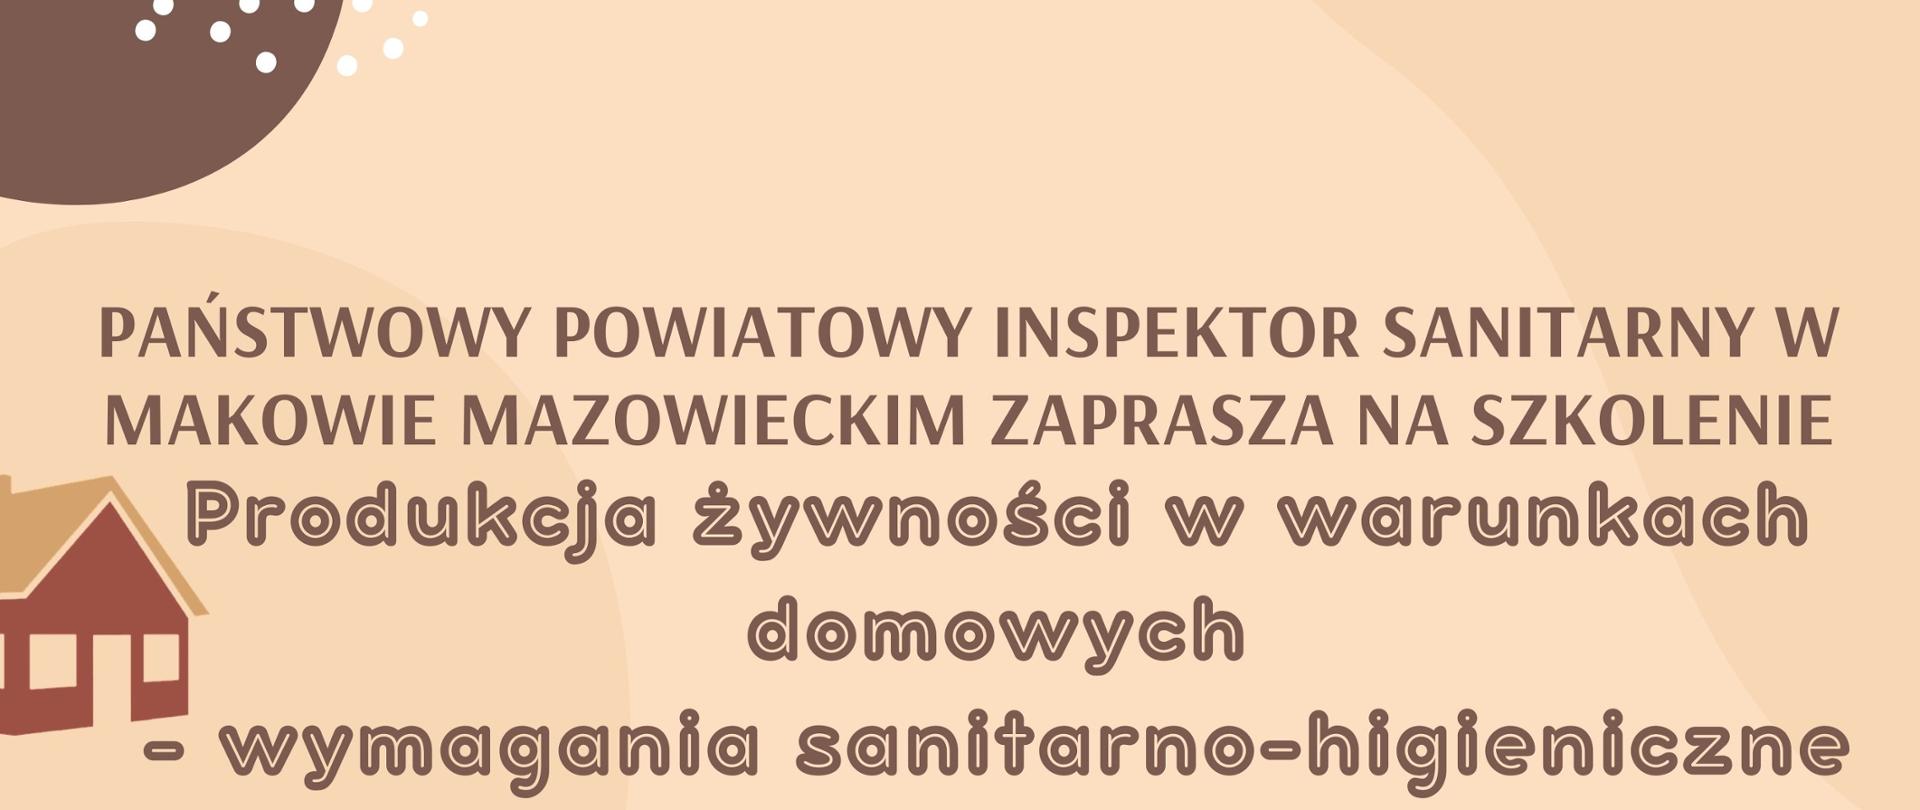 Napis: Państwowy Powiatowy Inspektor Sanitarny w Makowie Mazowieckim zaprasza na szkolenie Produkcja żywności w warunkach domowych – wymagania sanitarno-higieniczne. Z lewej strony obrazek domku.